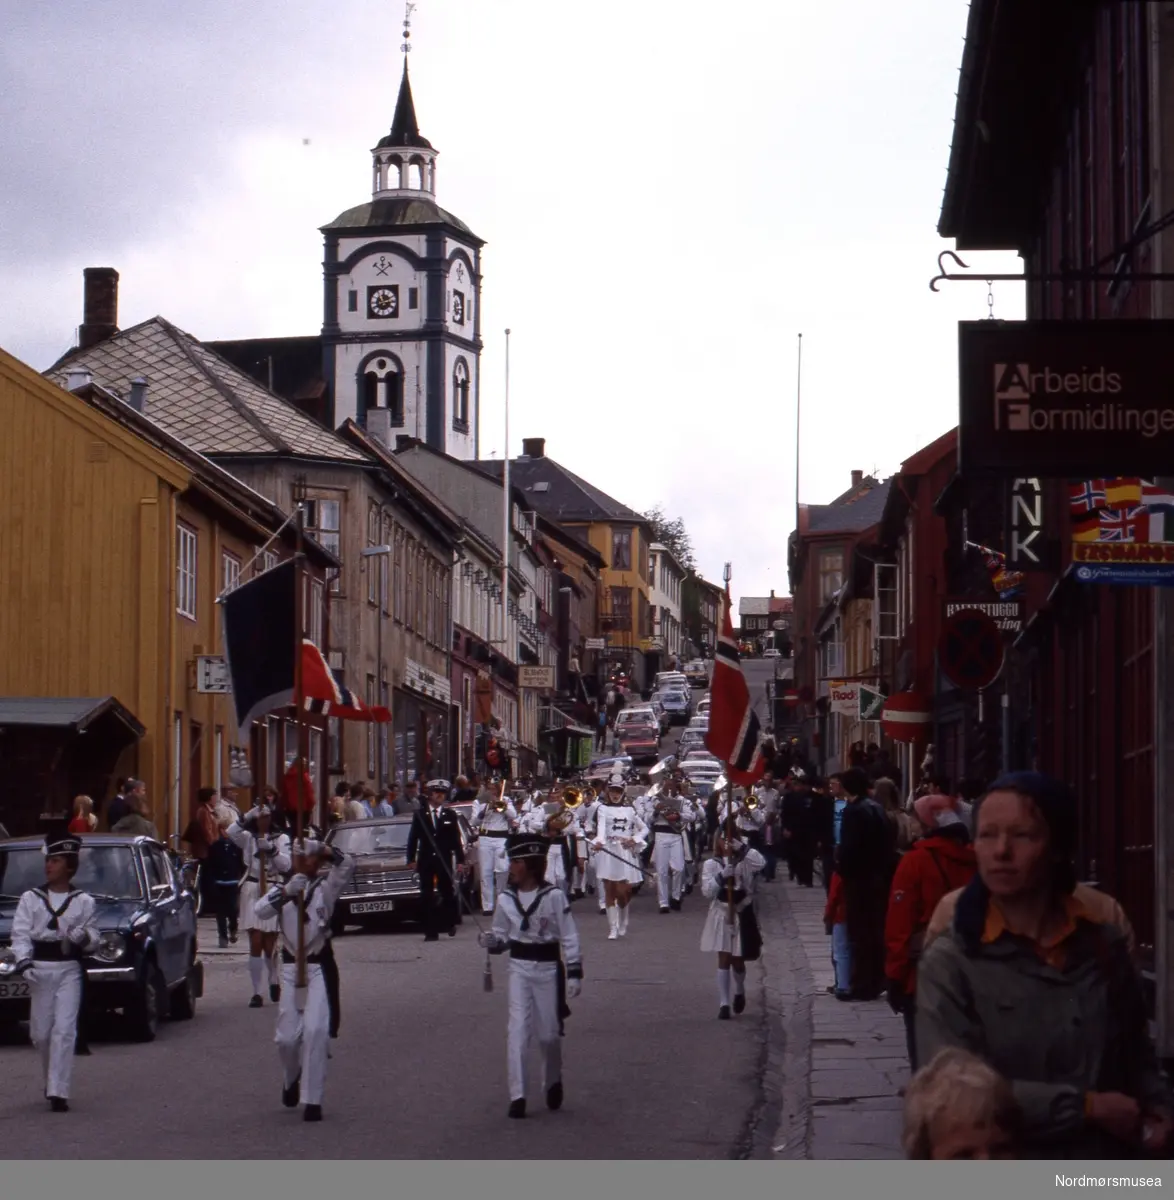 Foto trolig fra Nasjonaldagen, 17. mai, engang på 1980-tallet i Røros kommune. Fra Stein Magne Bach sin private fotosamling. Denne samlingen består av dias fra perioden omkring 1980. Fra Nordmøre museums fotosamlinger.